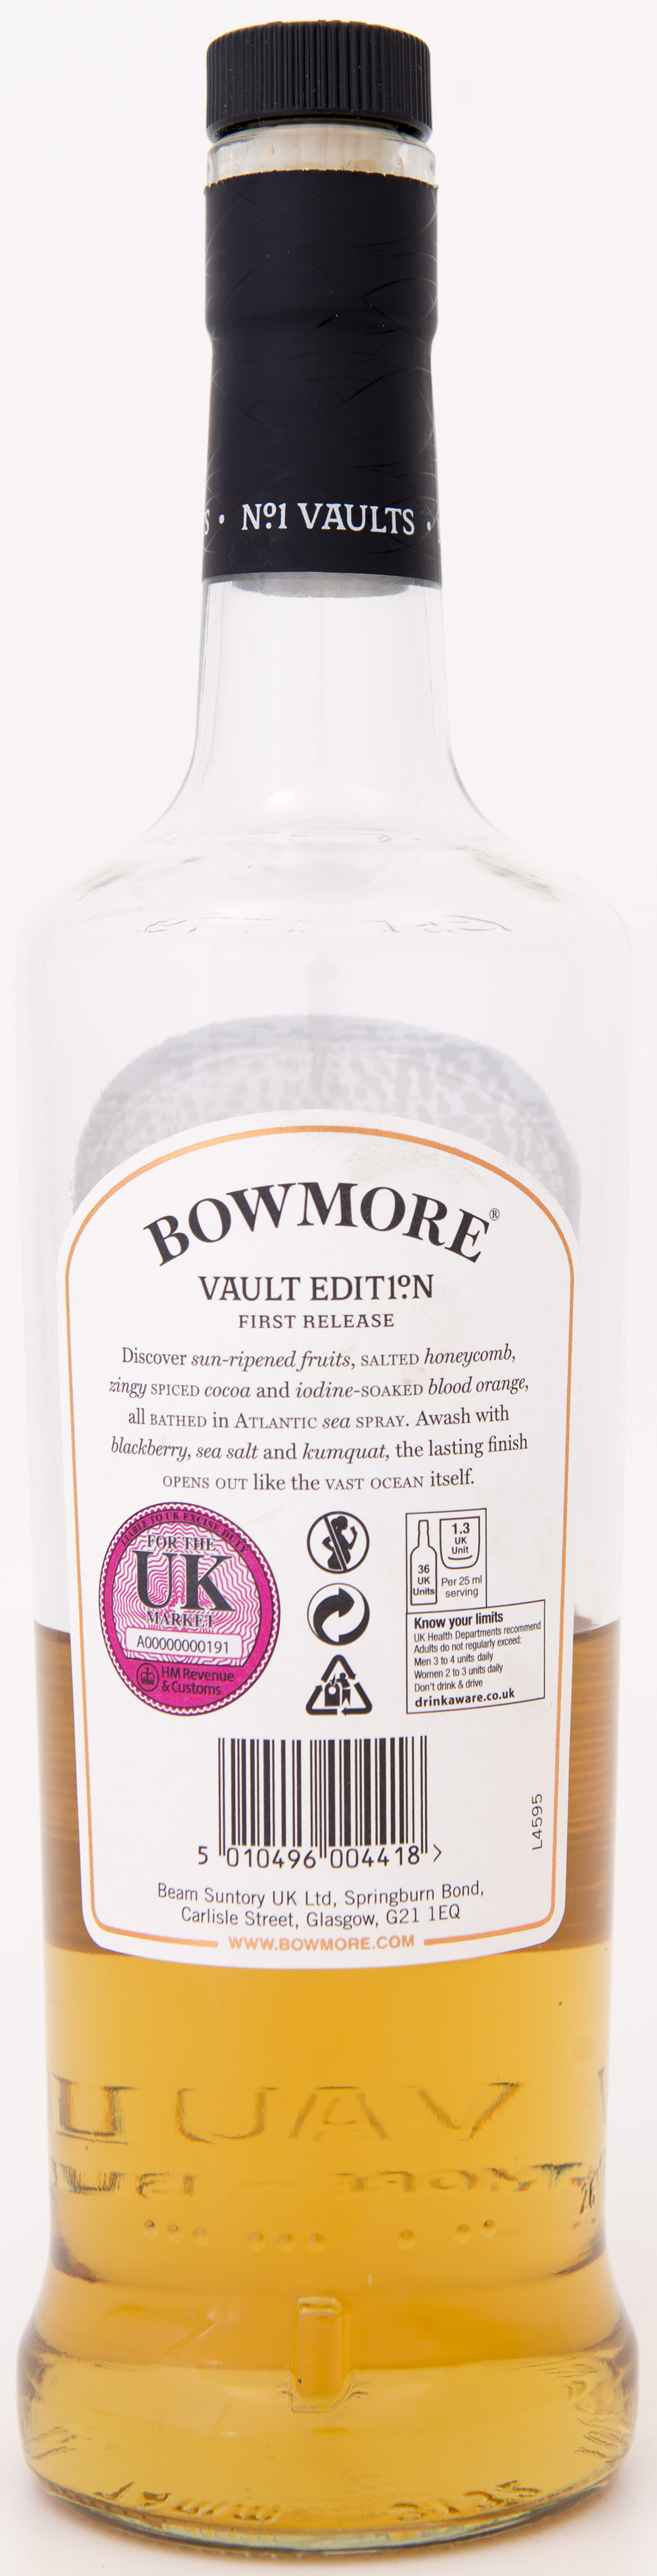 Billede: DSC_1618 - Bowmore Vaults No 1 first edition - bottle back.jpg